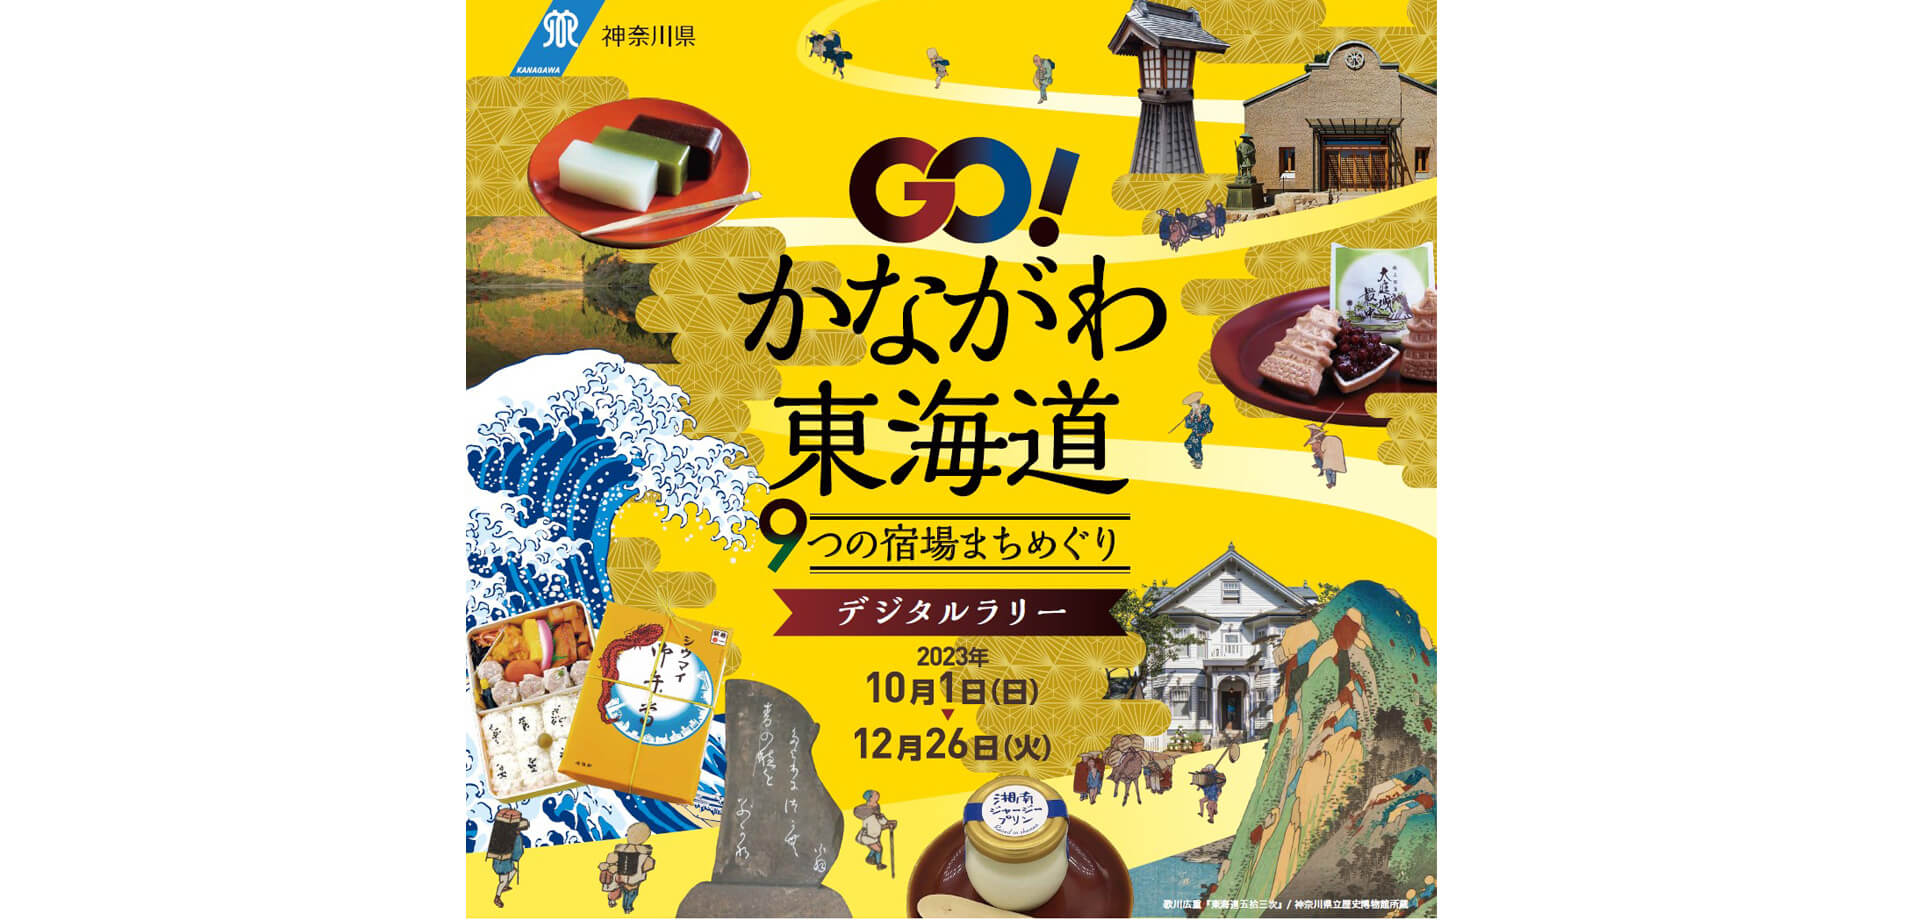 GO!かながわ東海道9つの宿場まちめぐりデジタルラリー ポスター